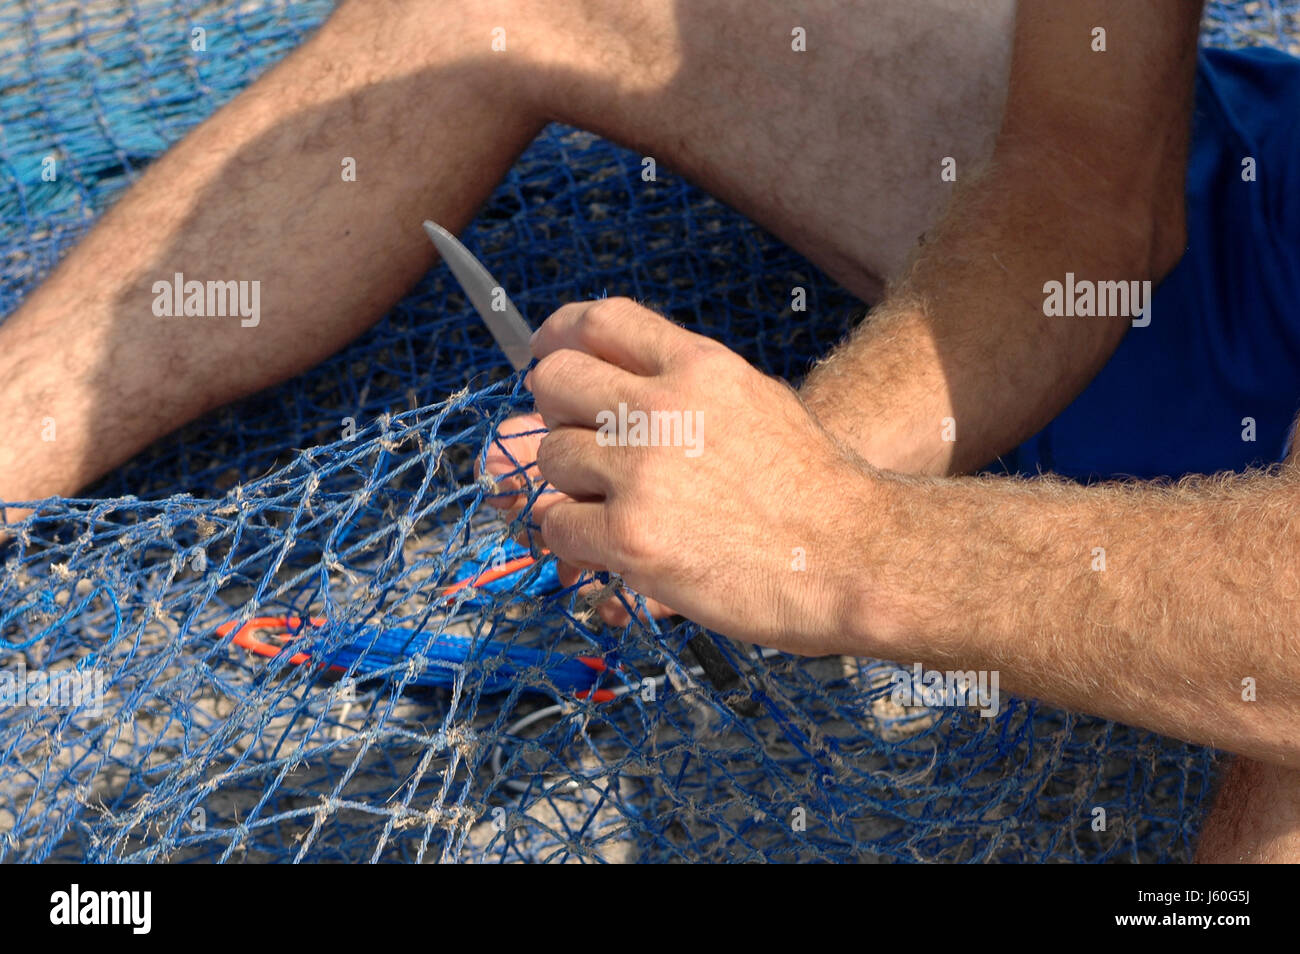 Main mains réparation filet de pêche pêche résille bleu aliment alimentaire poissons main mains Banque D'Images